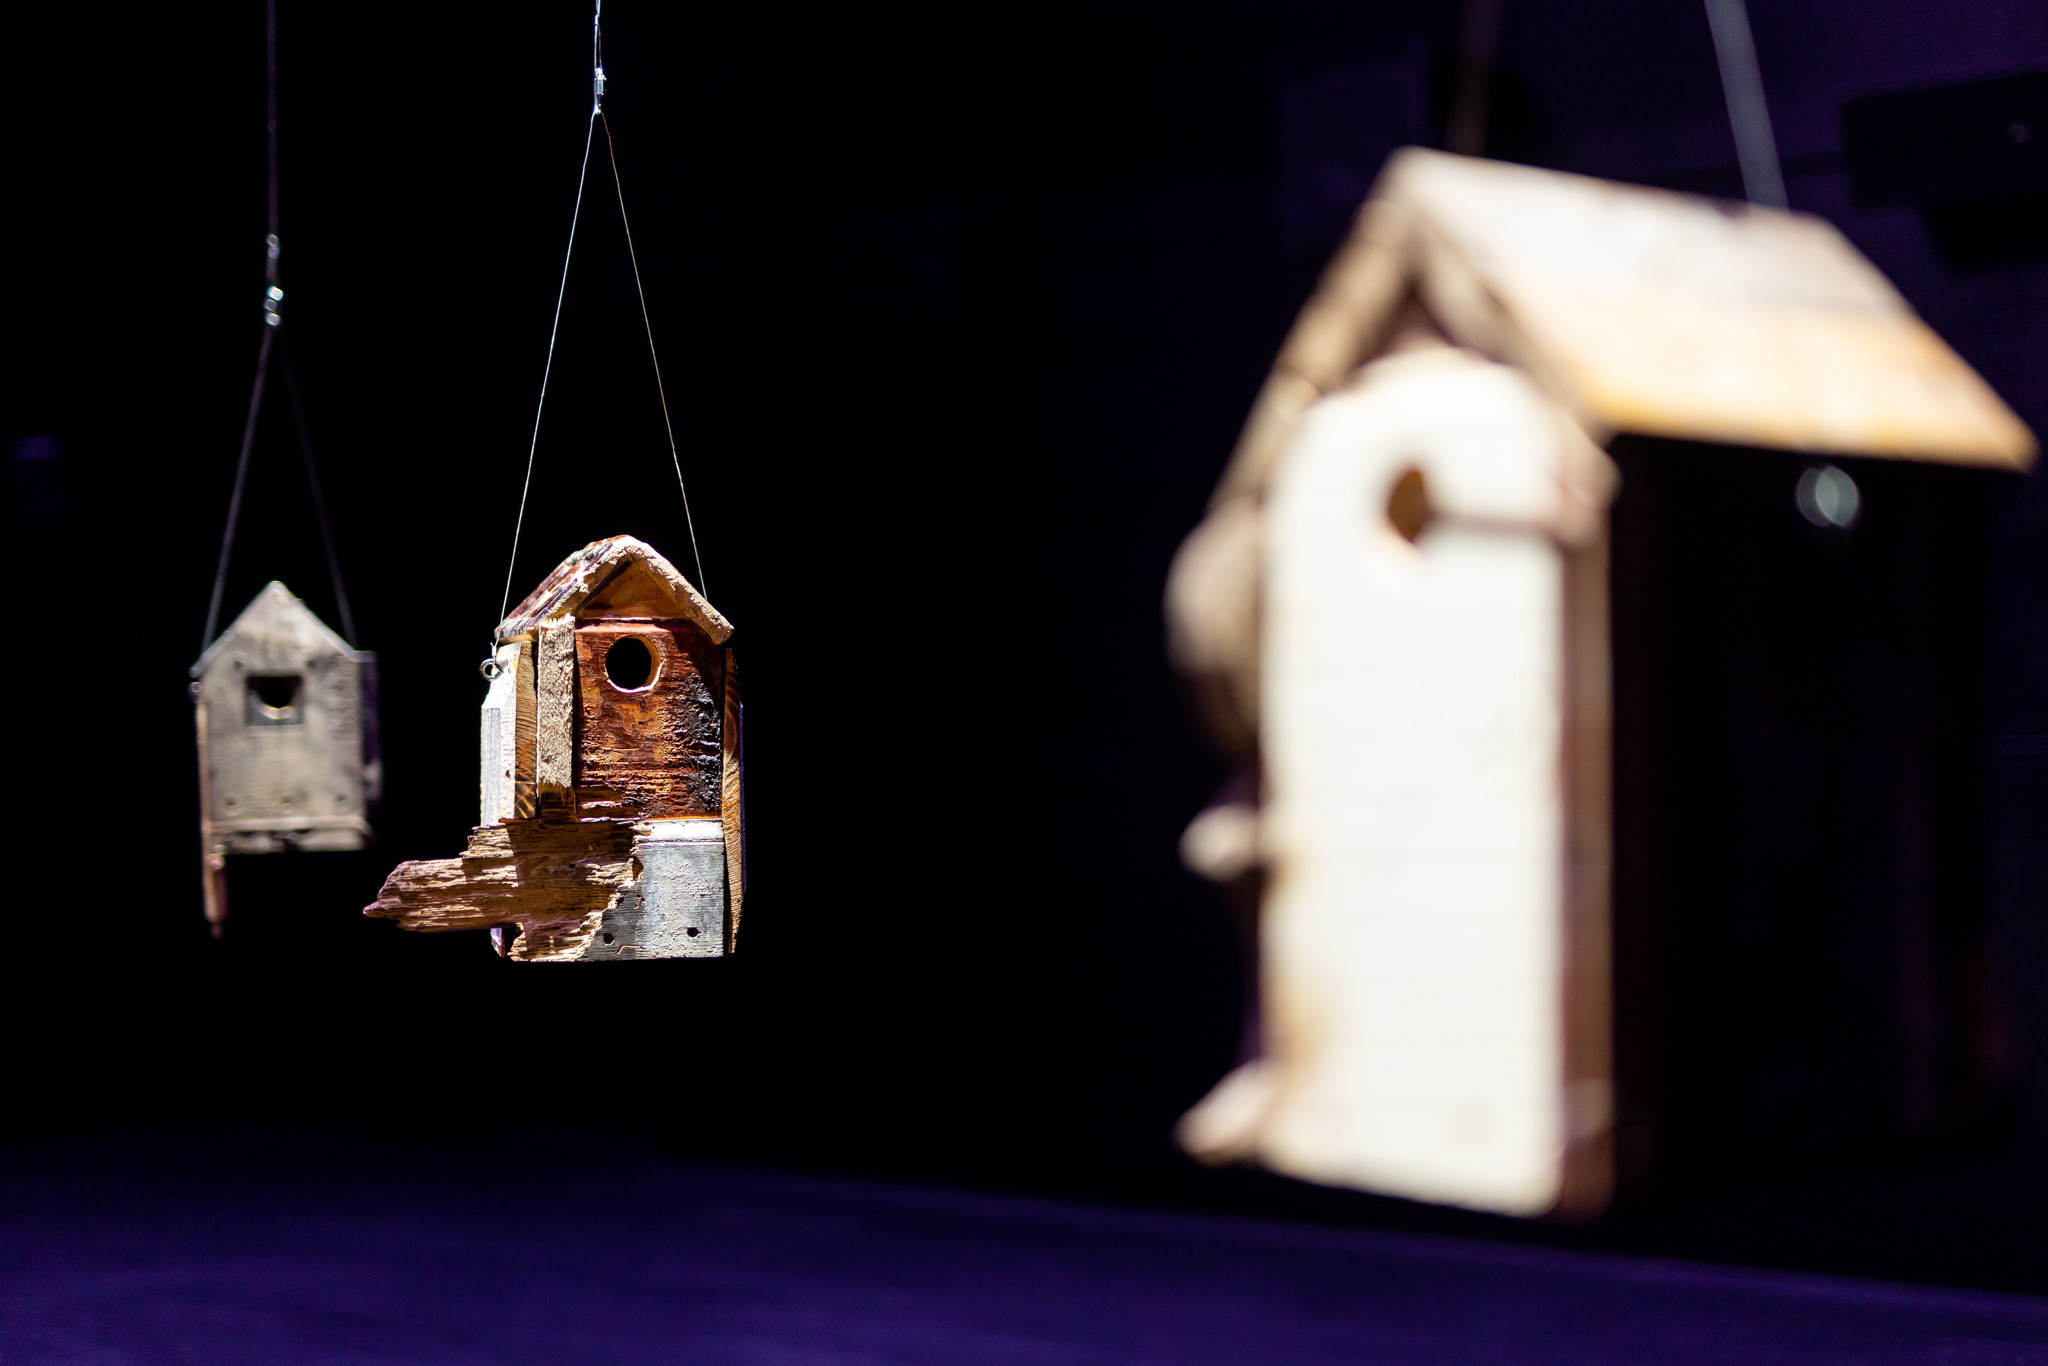 Художники представили проект Atgimimo inkilai, в котором птичьи домики созданы из обломков, собранных в Украине